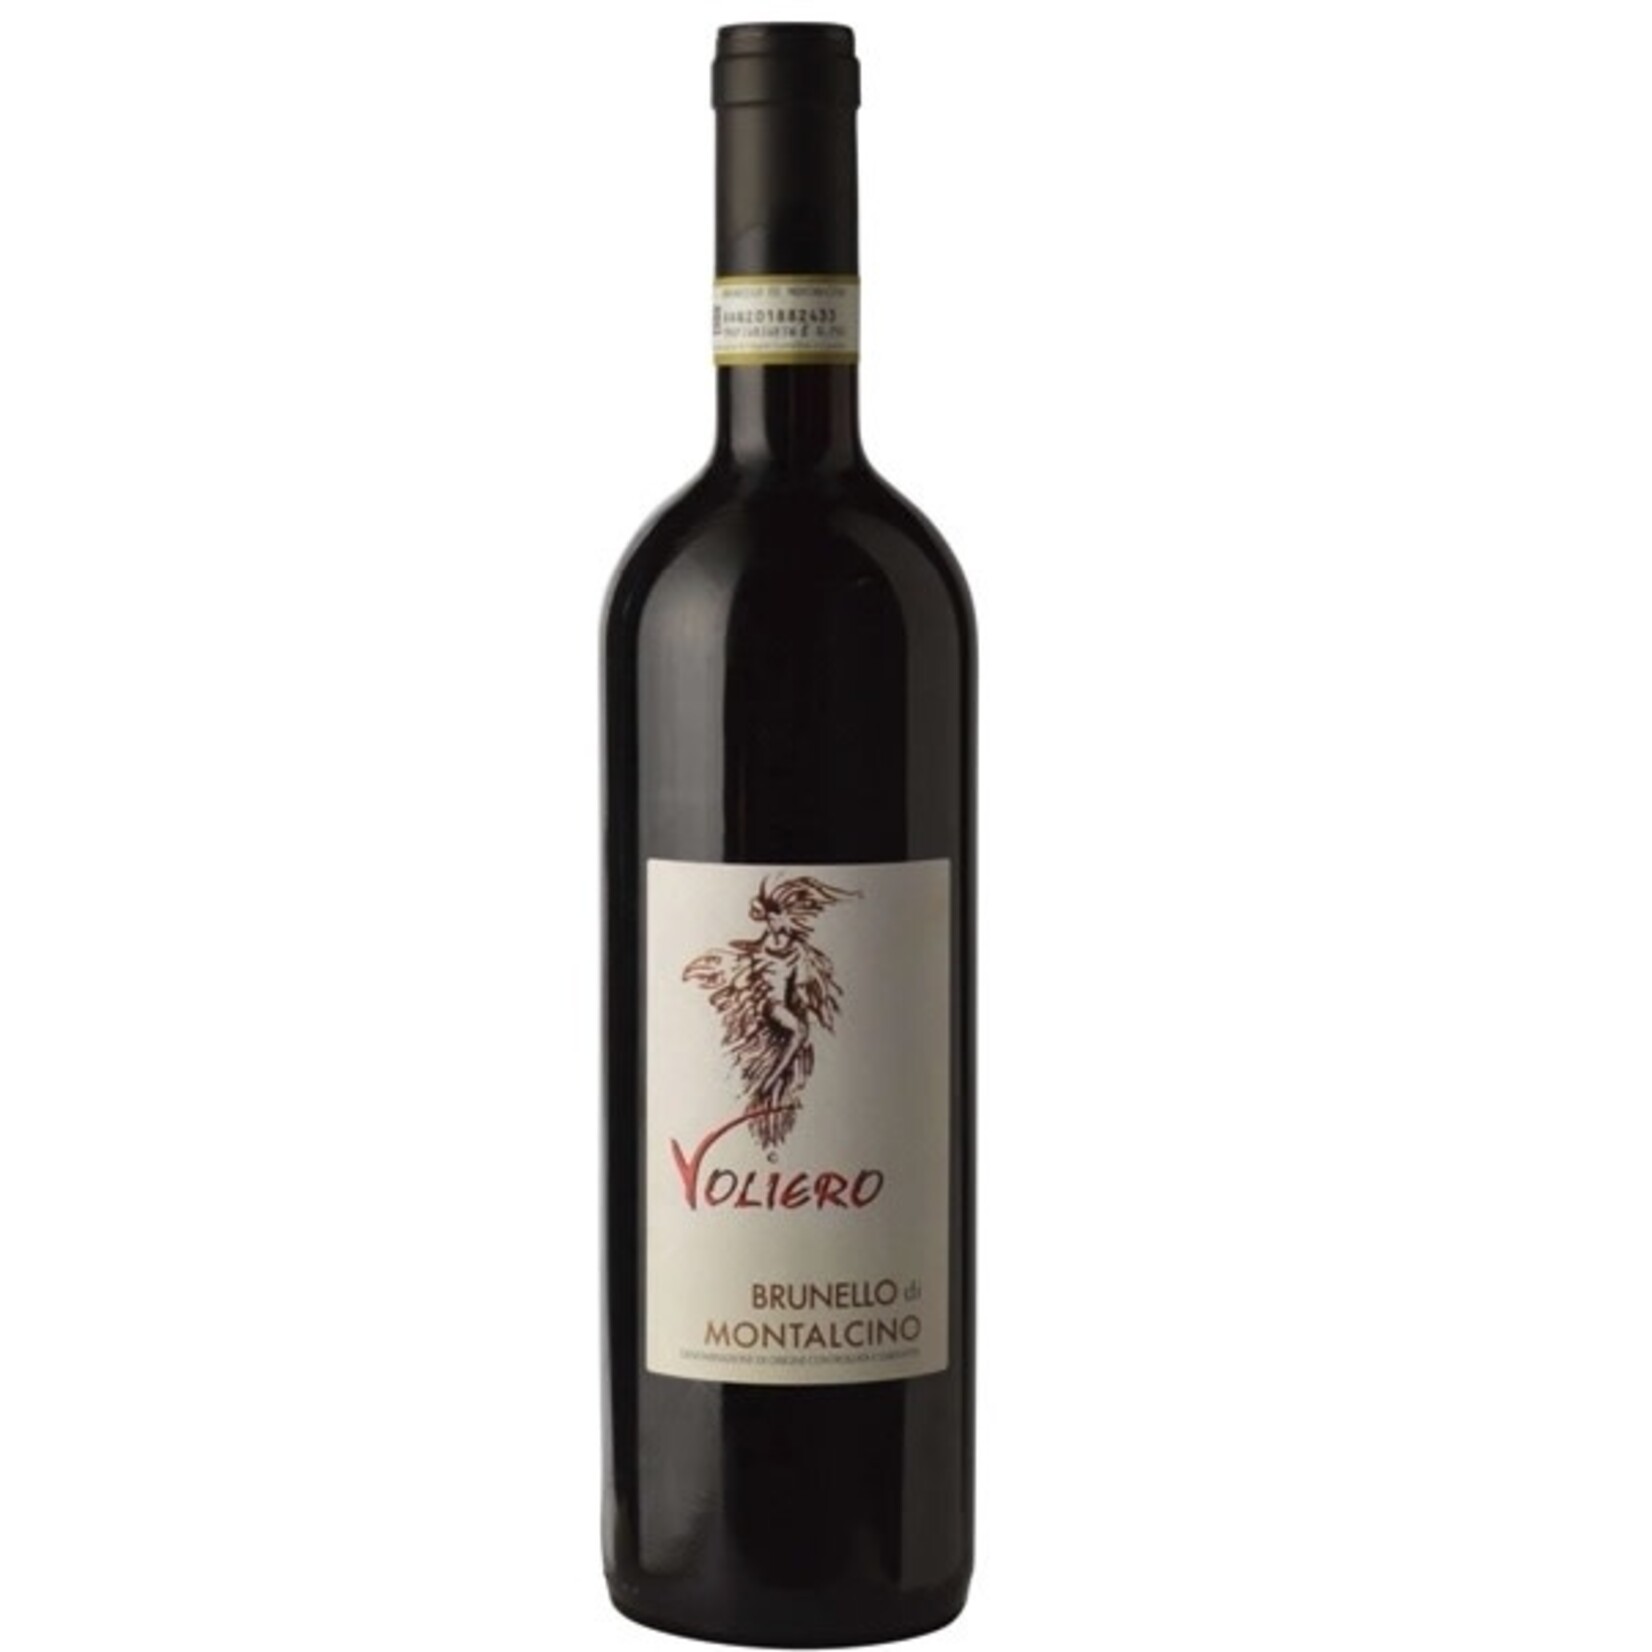 Wine Voliero Brunello di Montalcino 2019